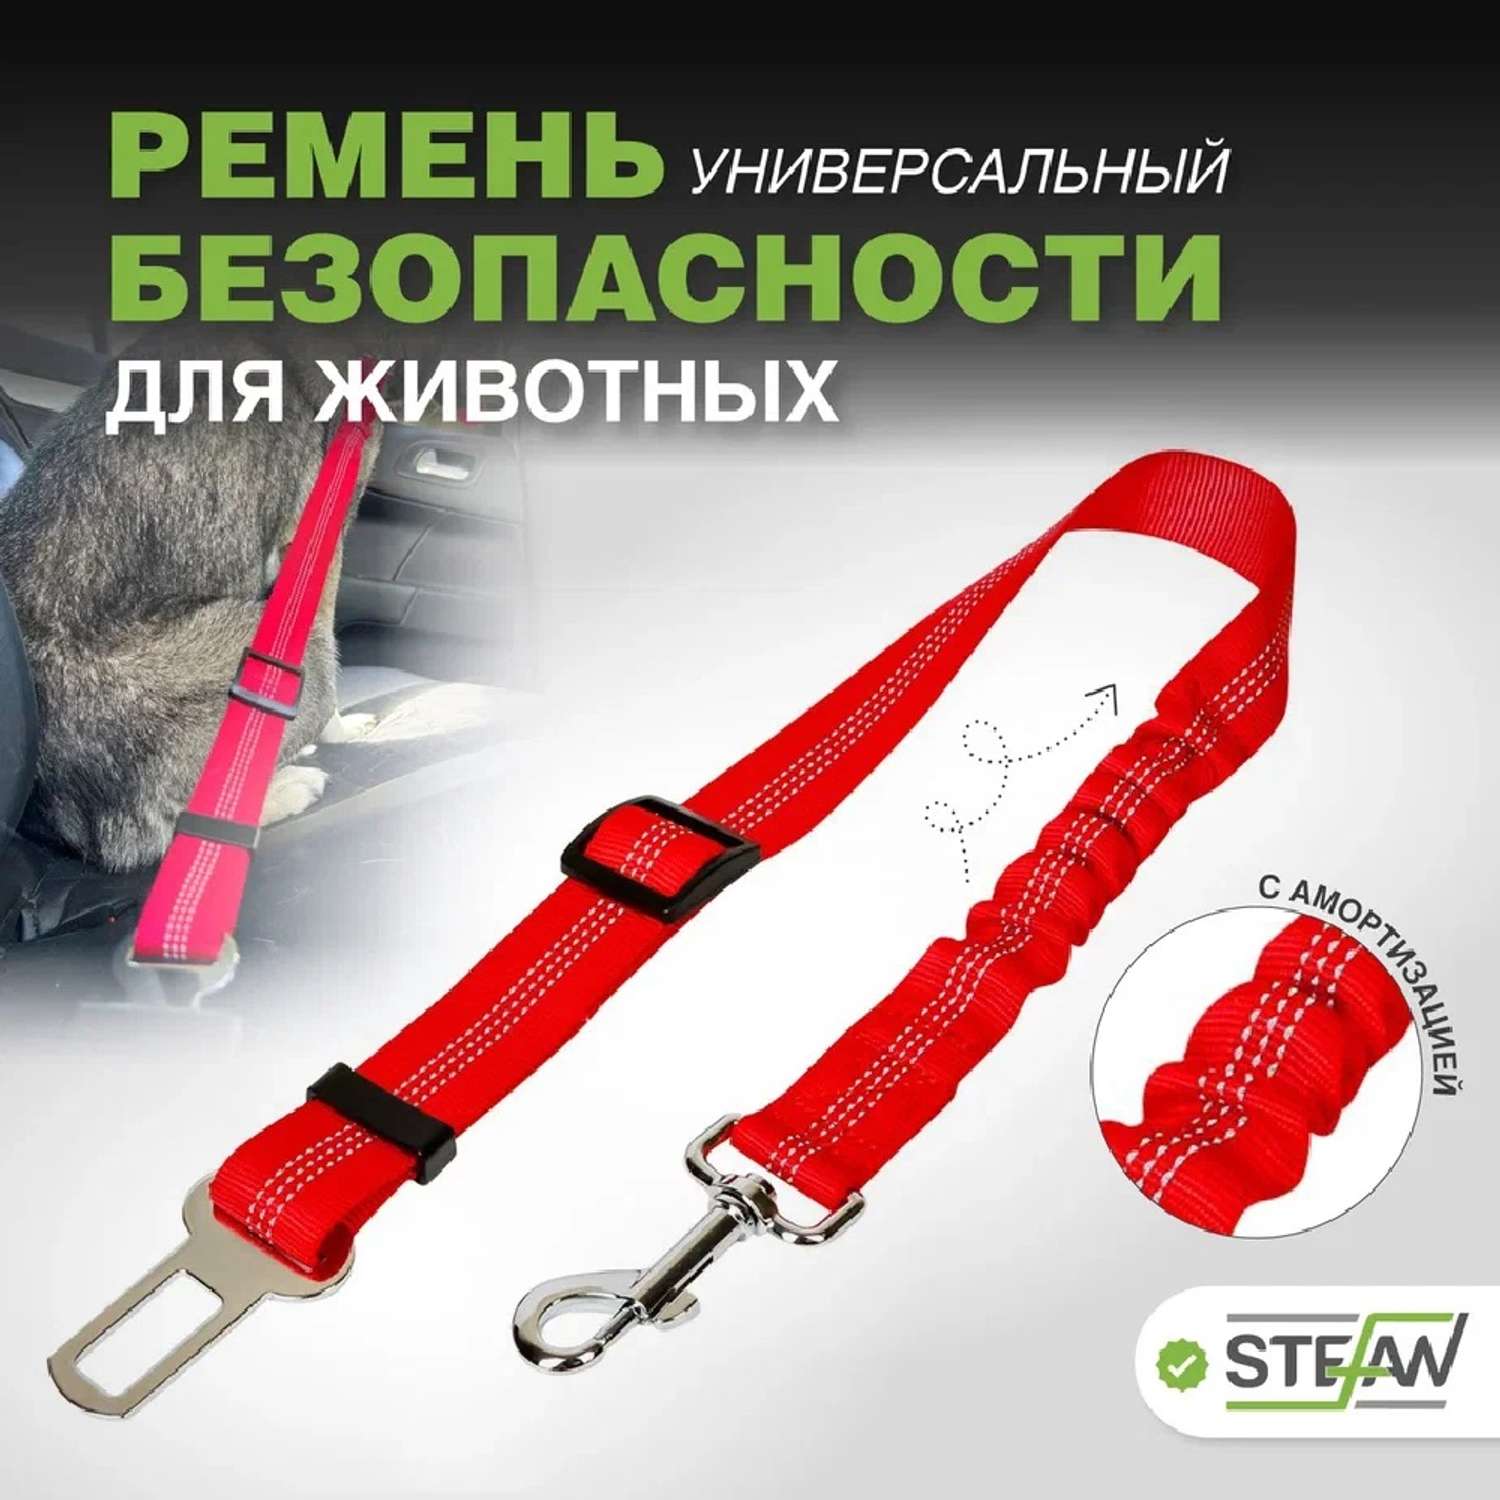 Ремень безопасности Stefan универсальный автомобильный с амортизацией для животных красный 53-74x2.5см - фото 1